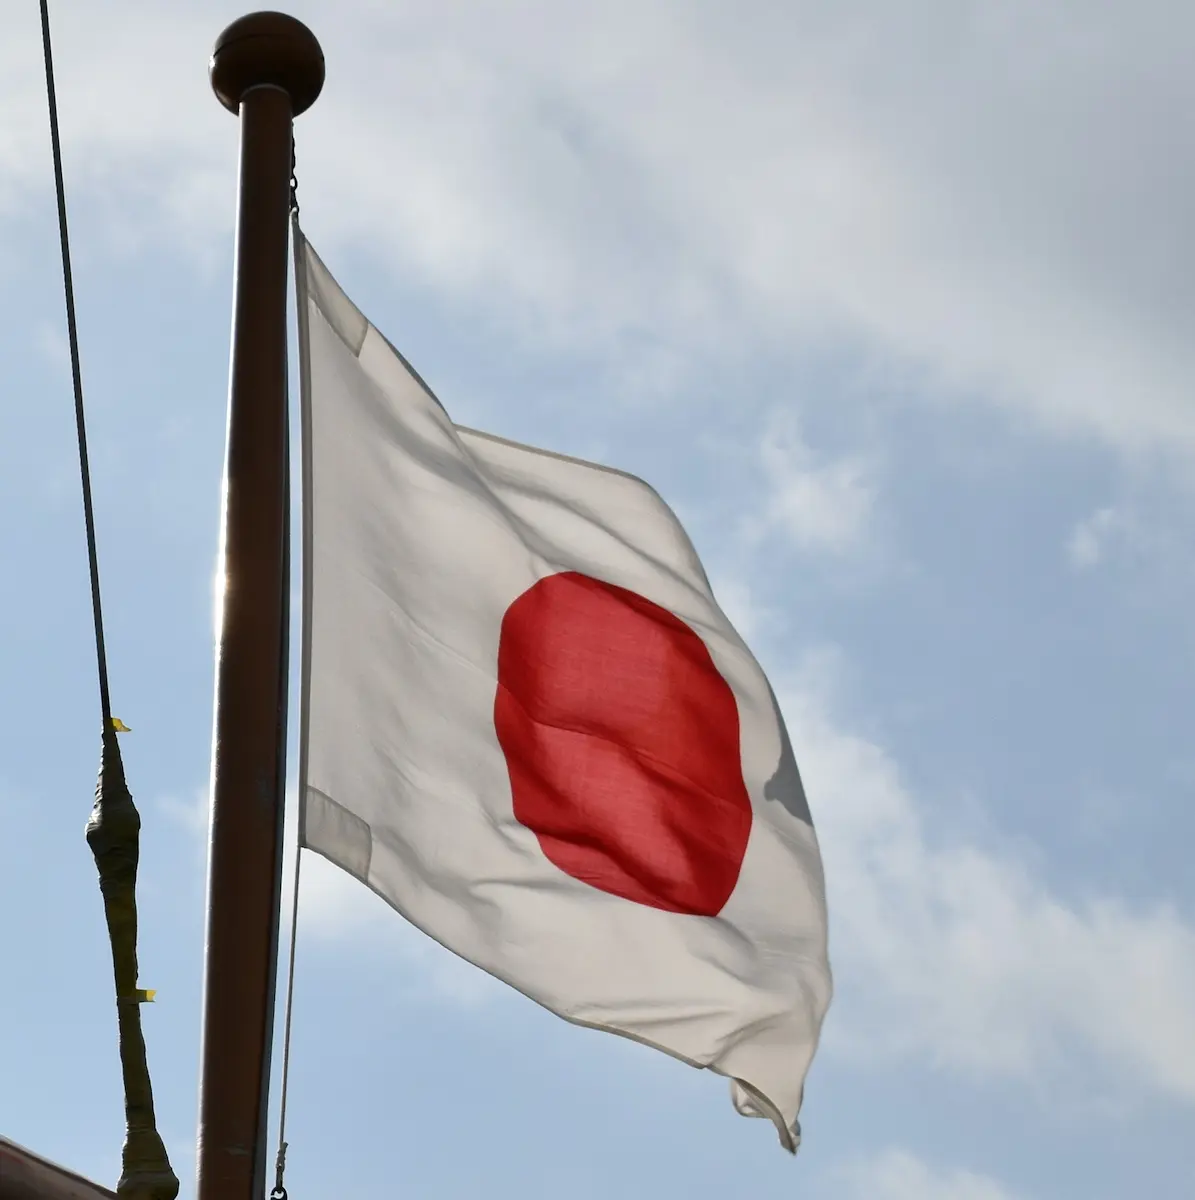 Stablecoin-Regulierung in Japan: Verbot aufgehoben?